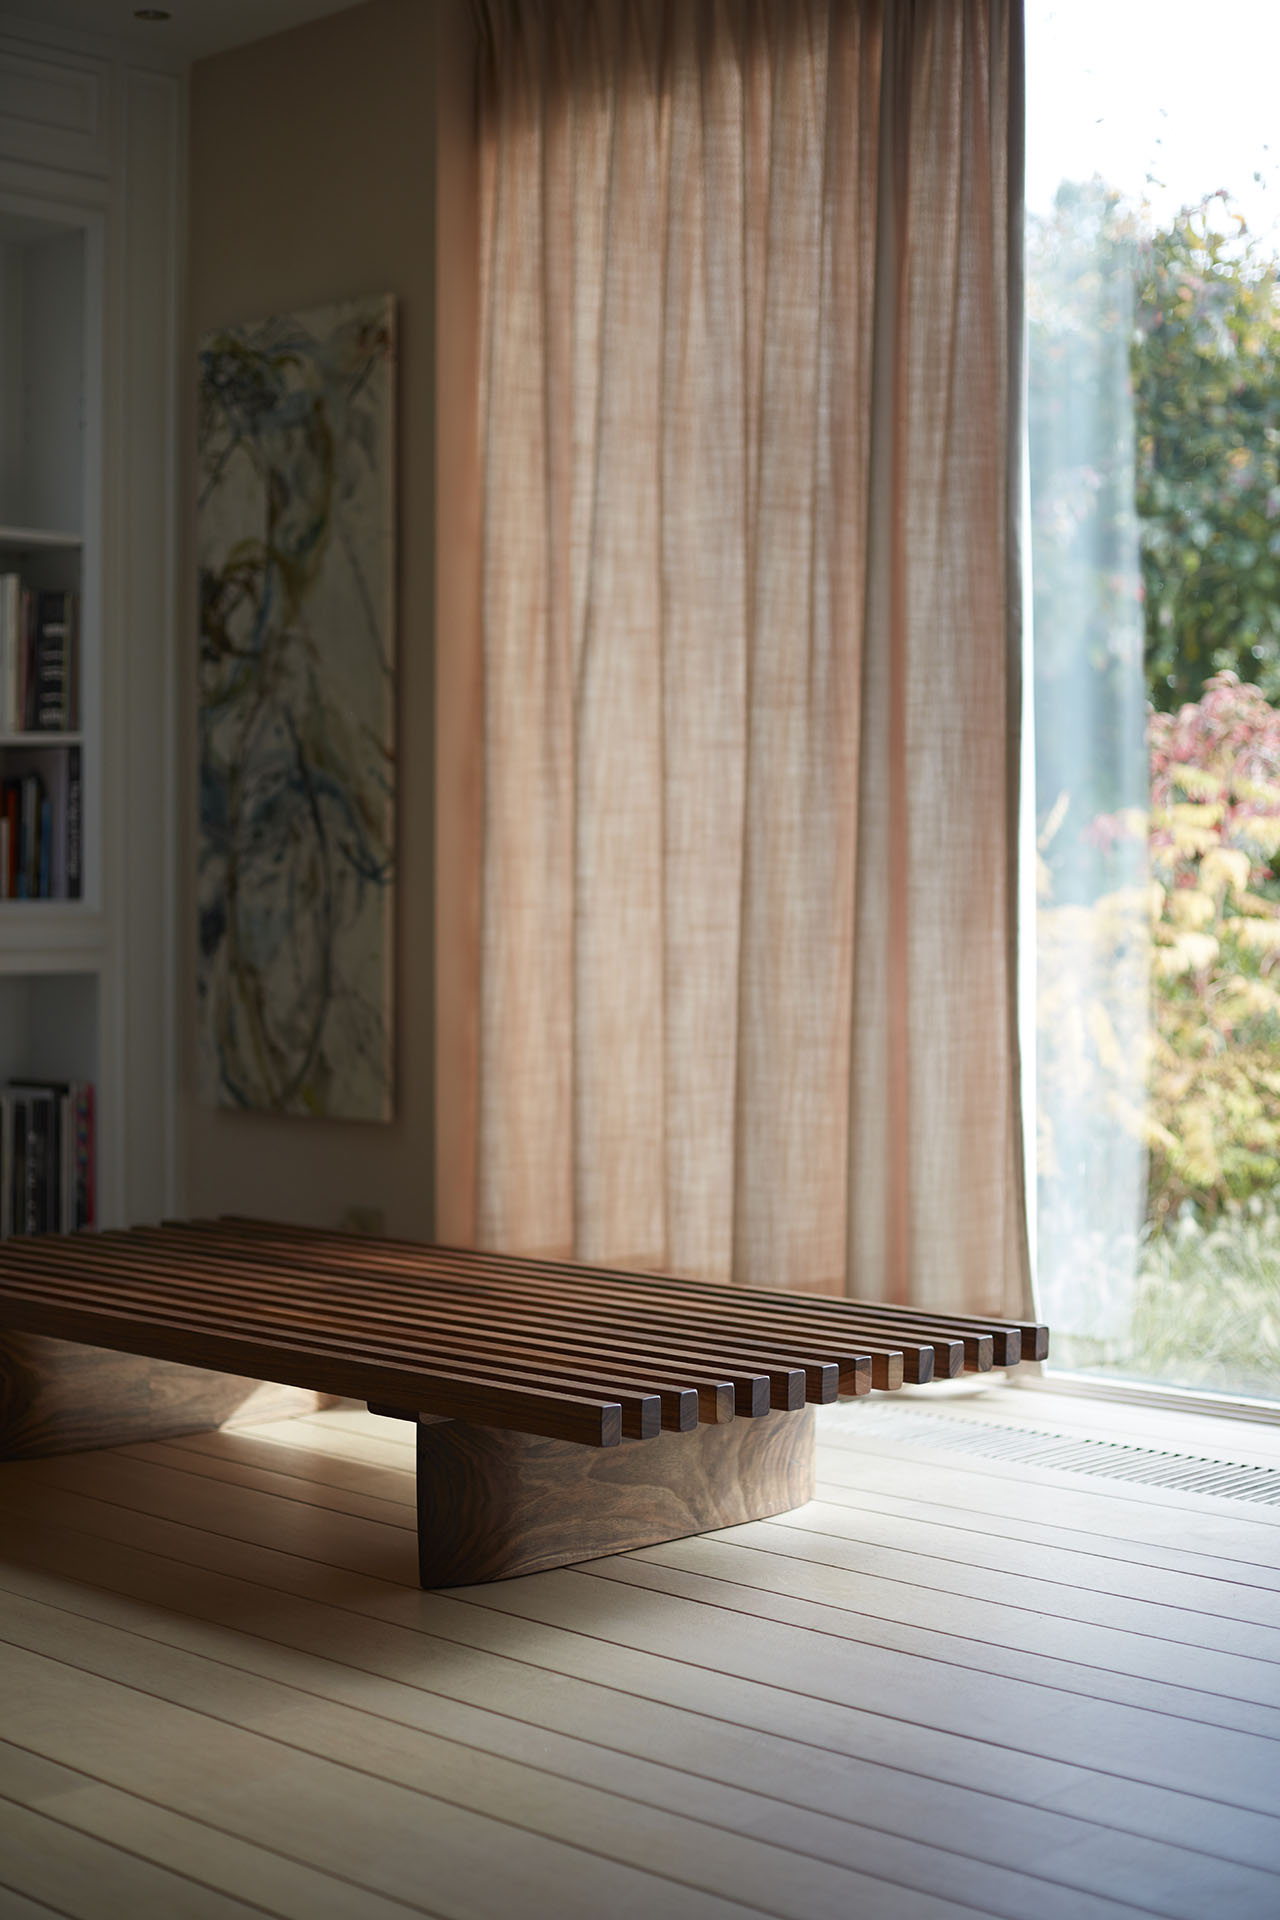 tokio_bench | Woodz Design | Zander Steels